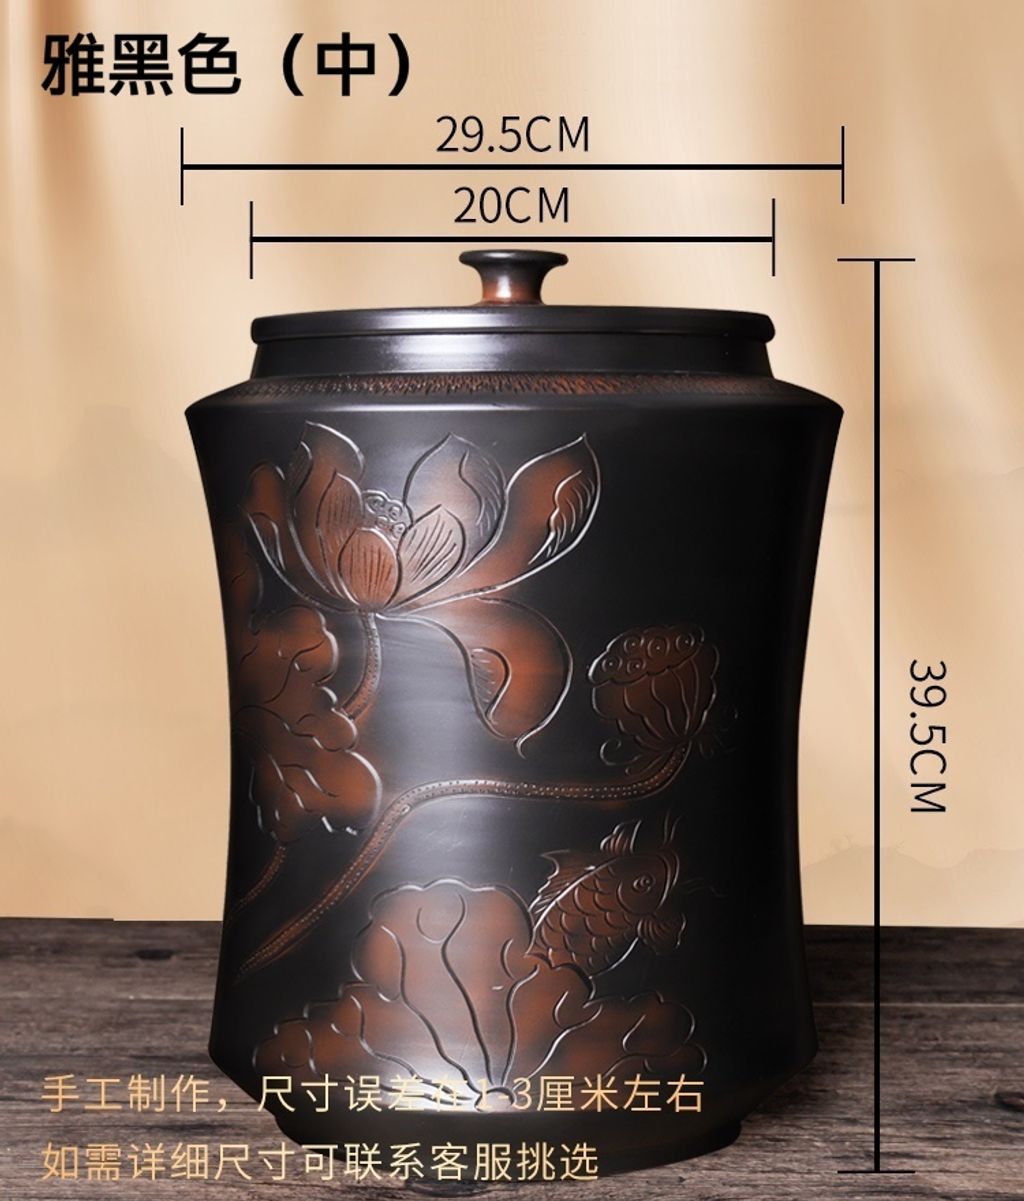 紫陶茶缸4-2雅黑色.jpg